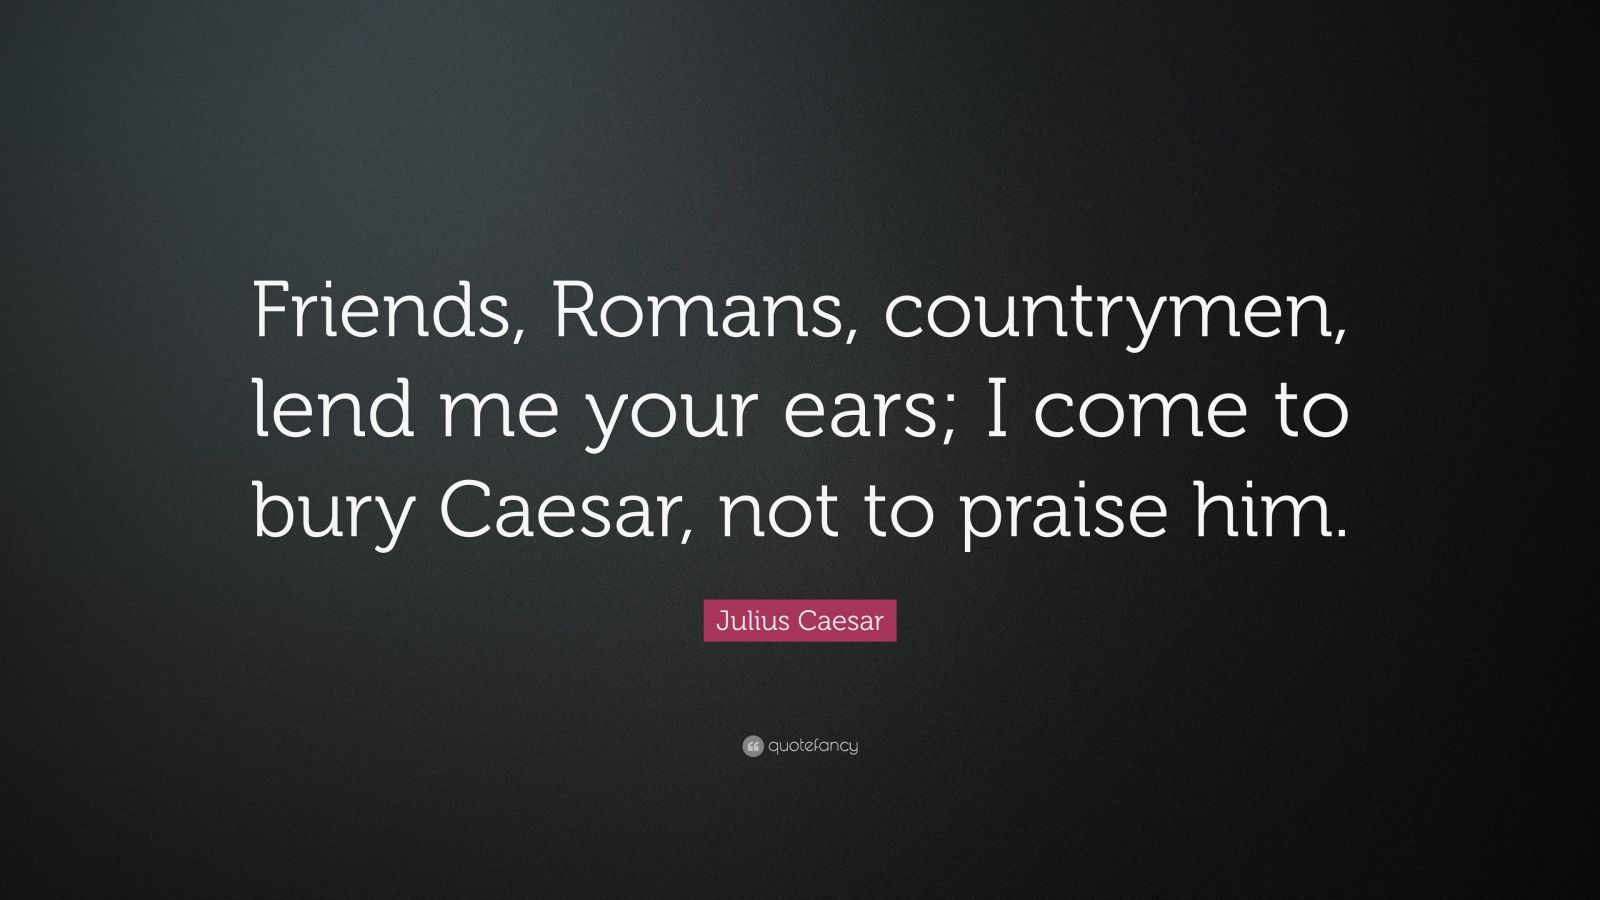 caesar lend me your ears